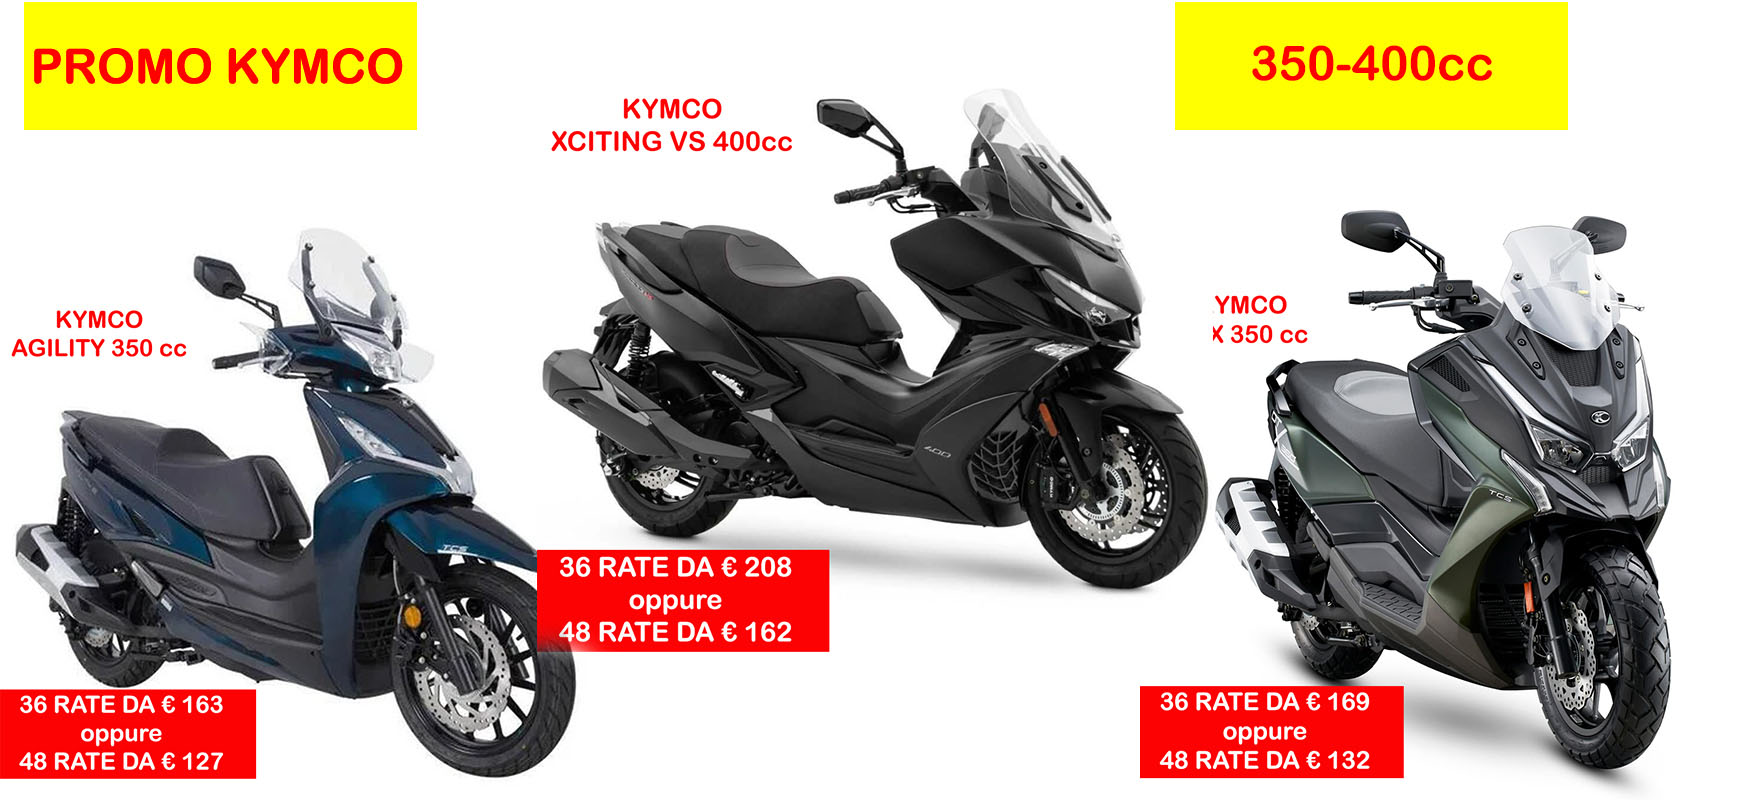 Promo Kymco Maggio 350-400cc